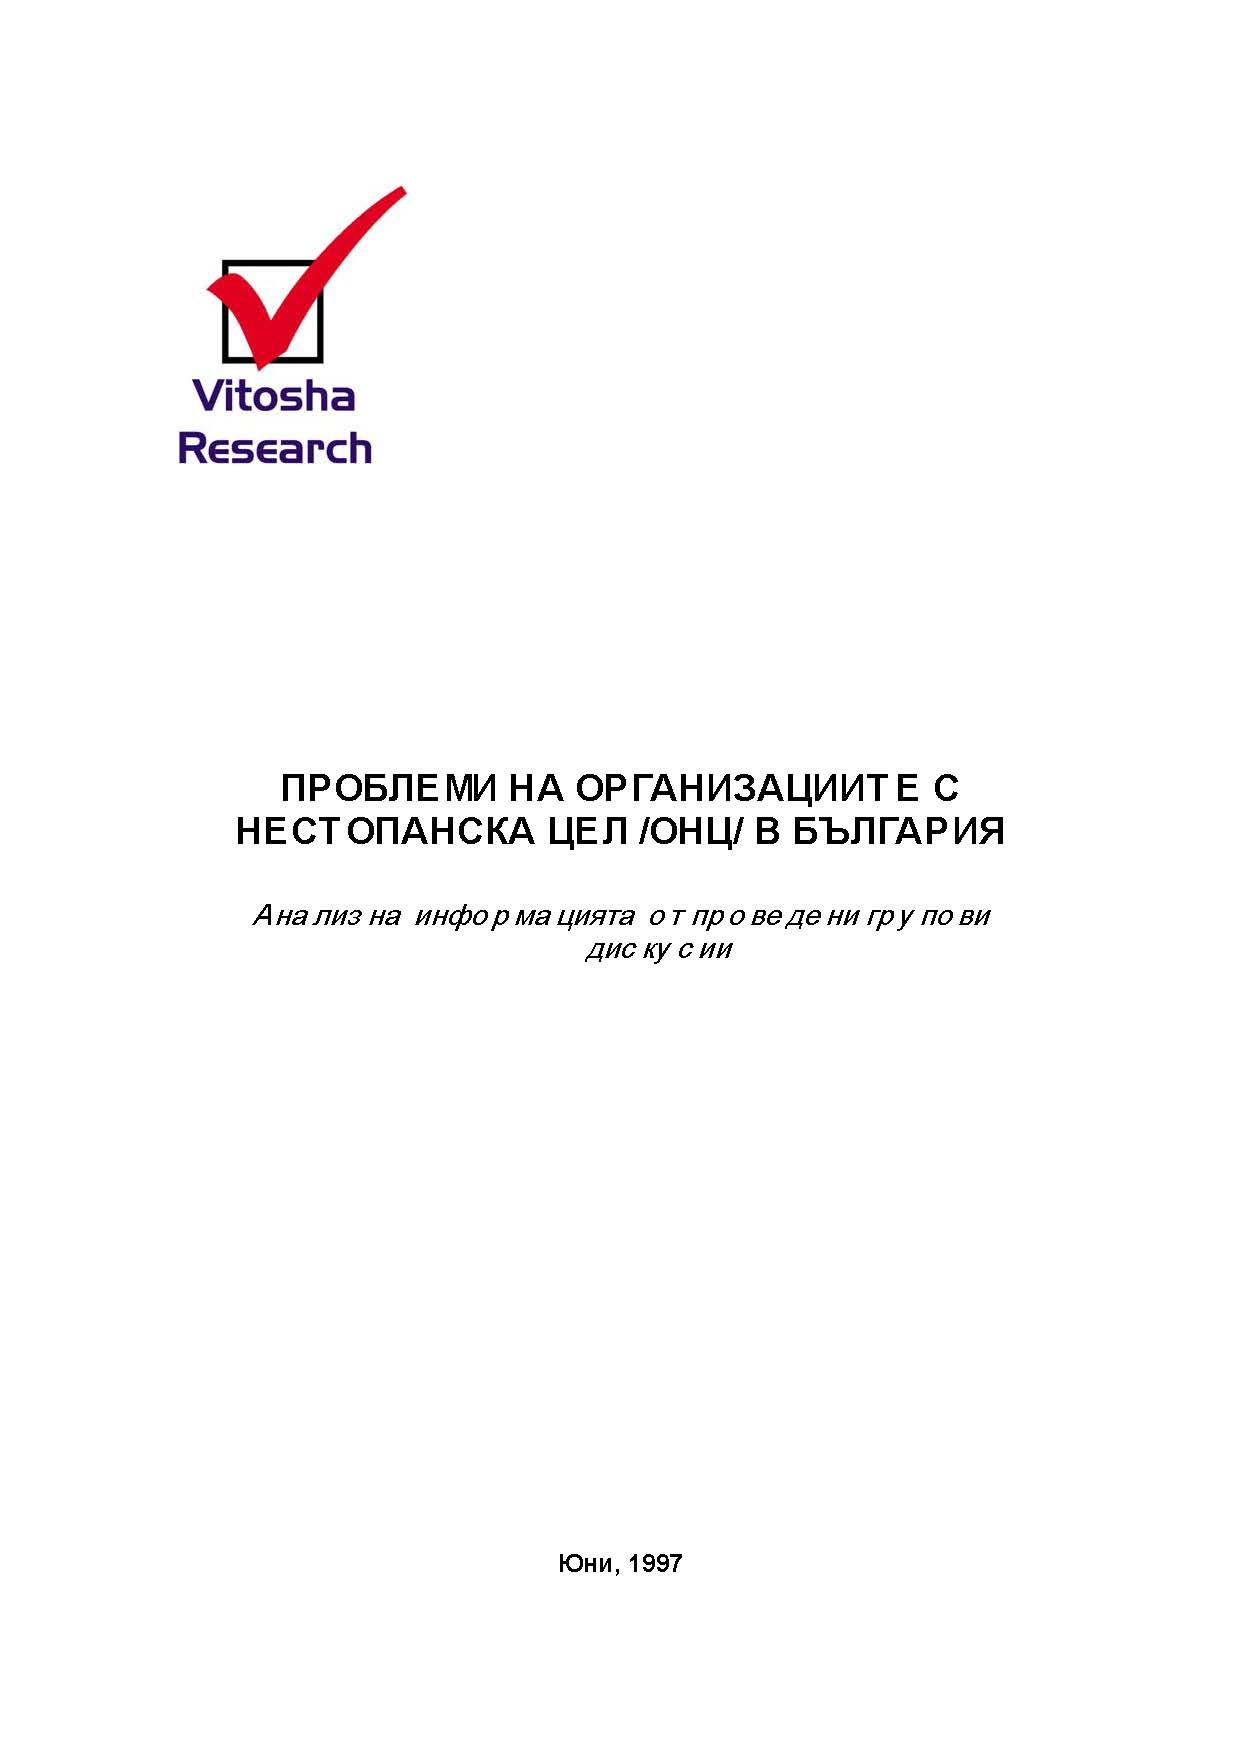 Проблеми на организациите с нестопанска цел в България, юни 1997